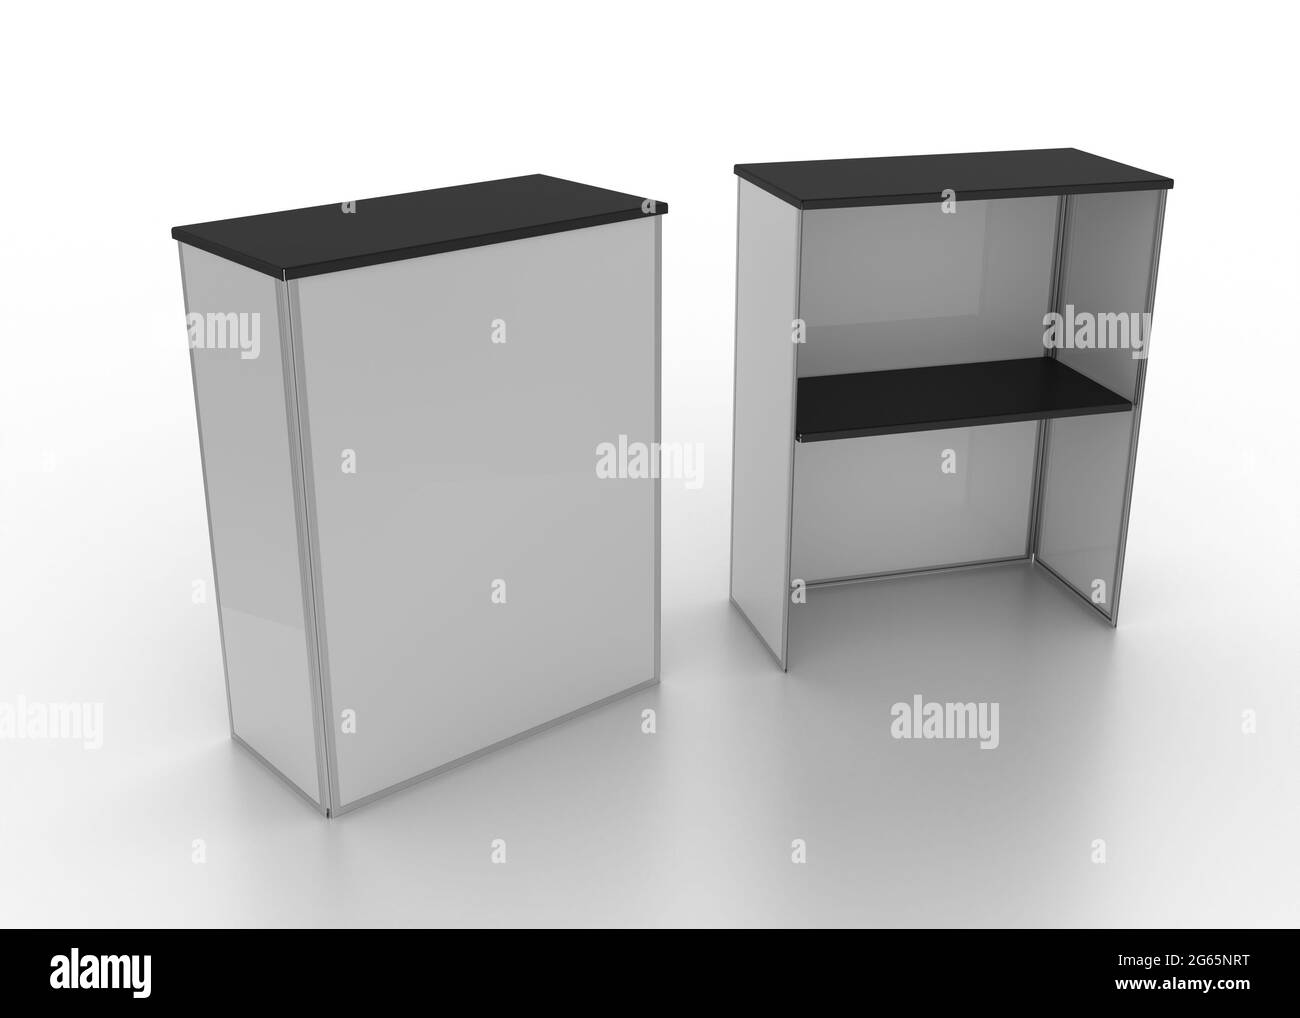 Comptoir en aluminium Banque d'images noir et blanc - Alamy